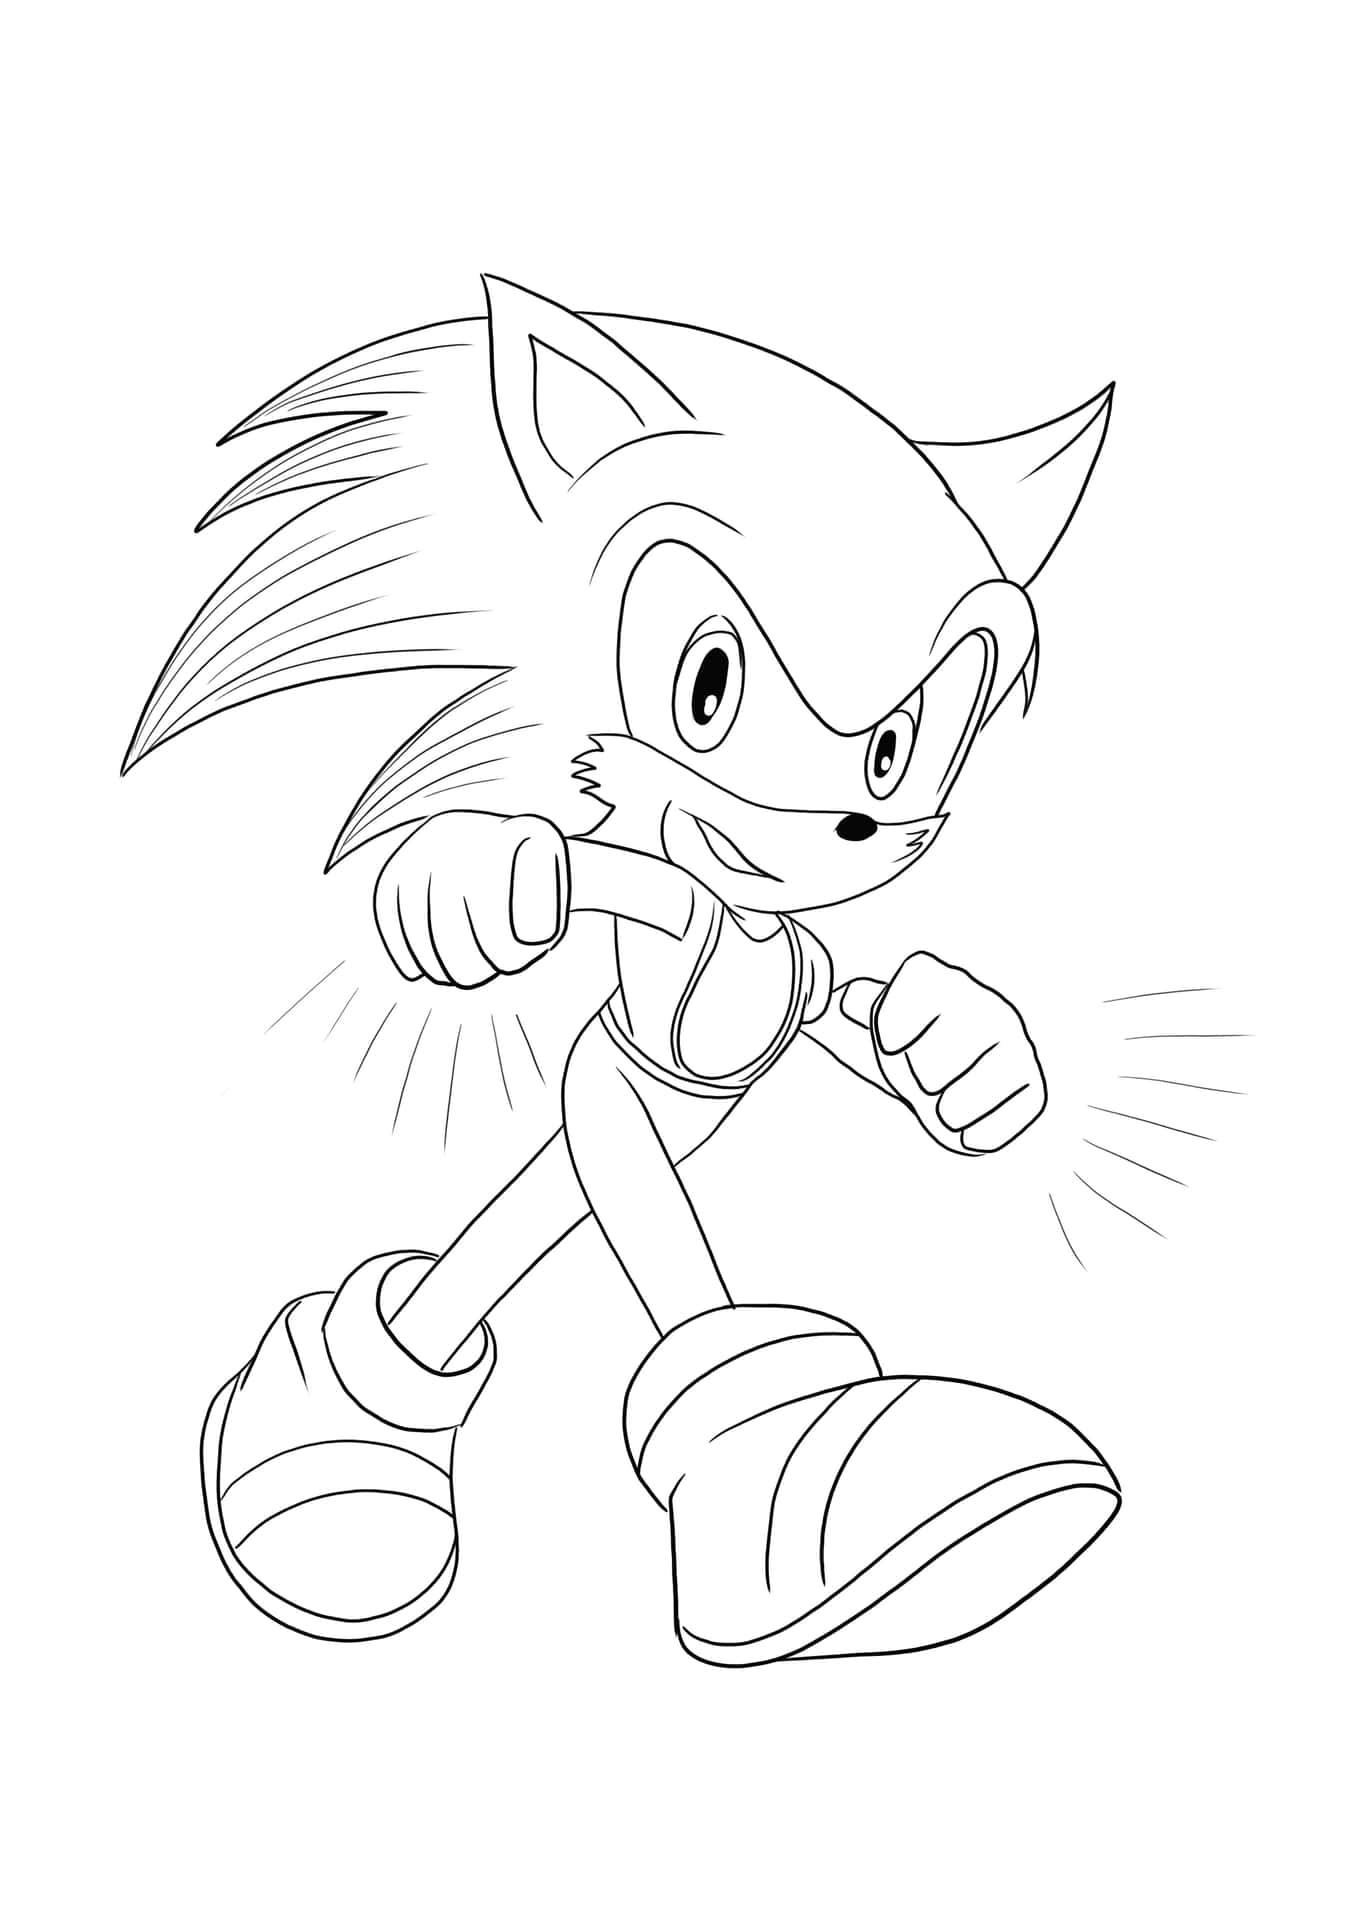 Imagenpara Colorear De Sonic, Sonic The Hedgehog Caminando.